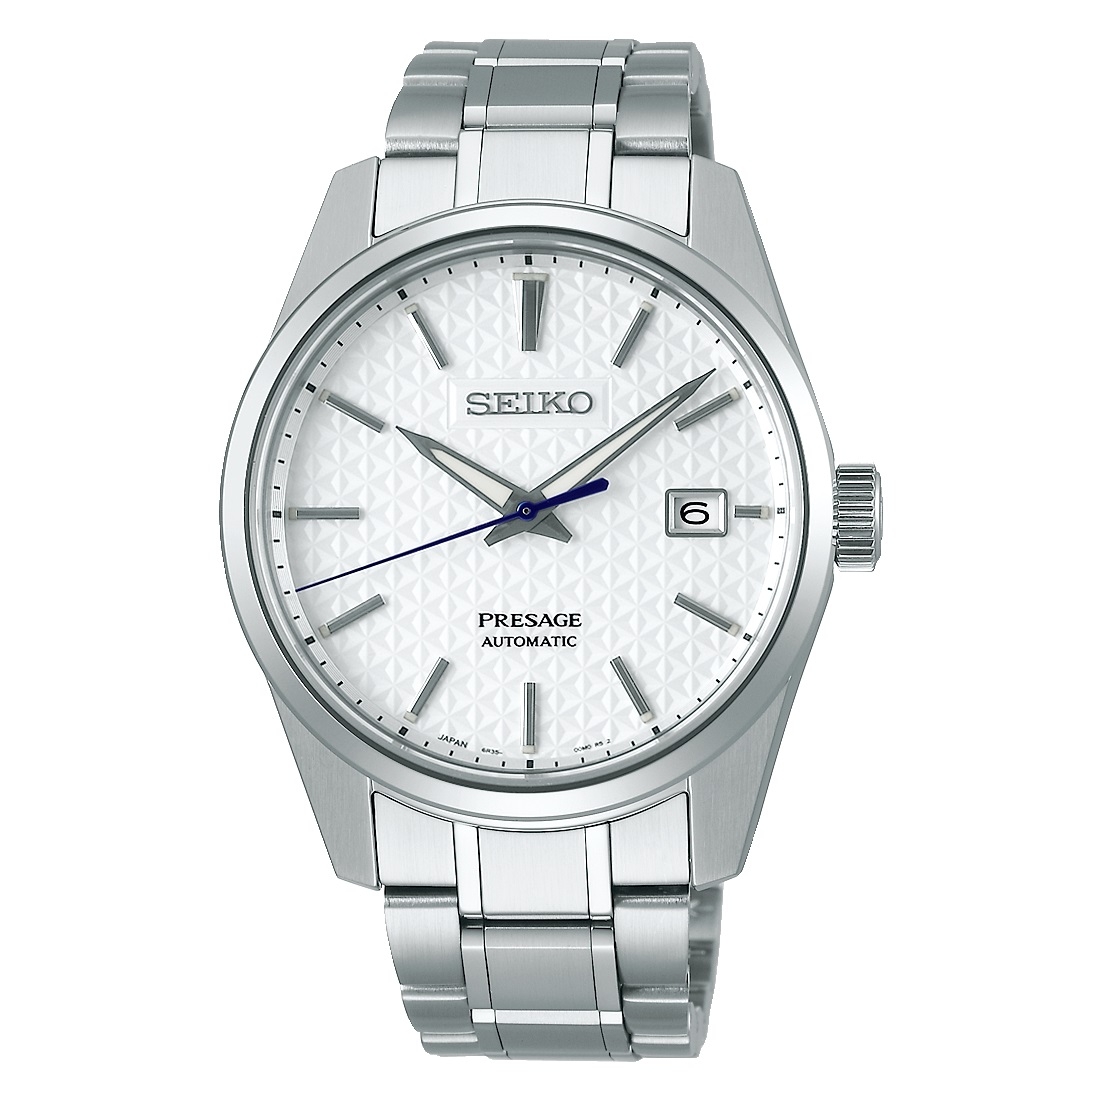 SEIKO - spezialisiert Uhren wwt - b2b - | erste - Herstellung